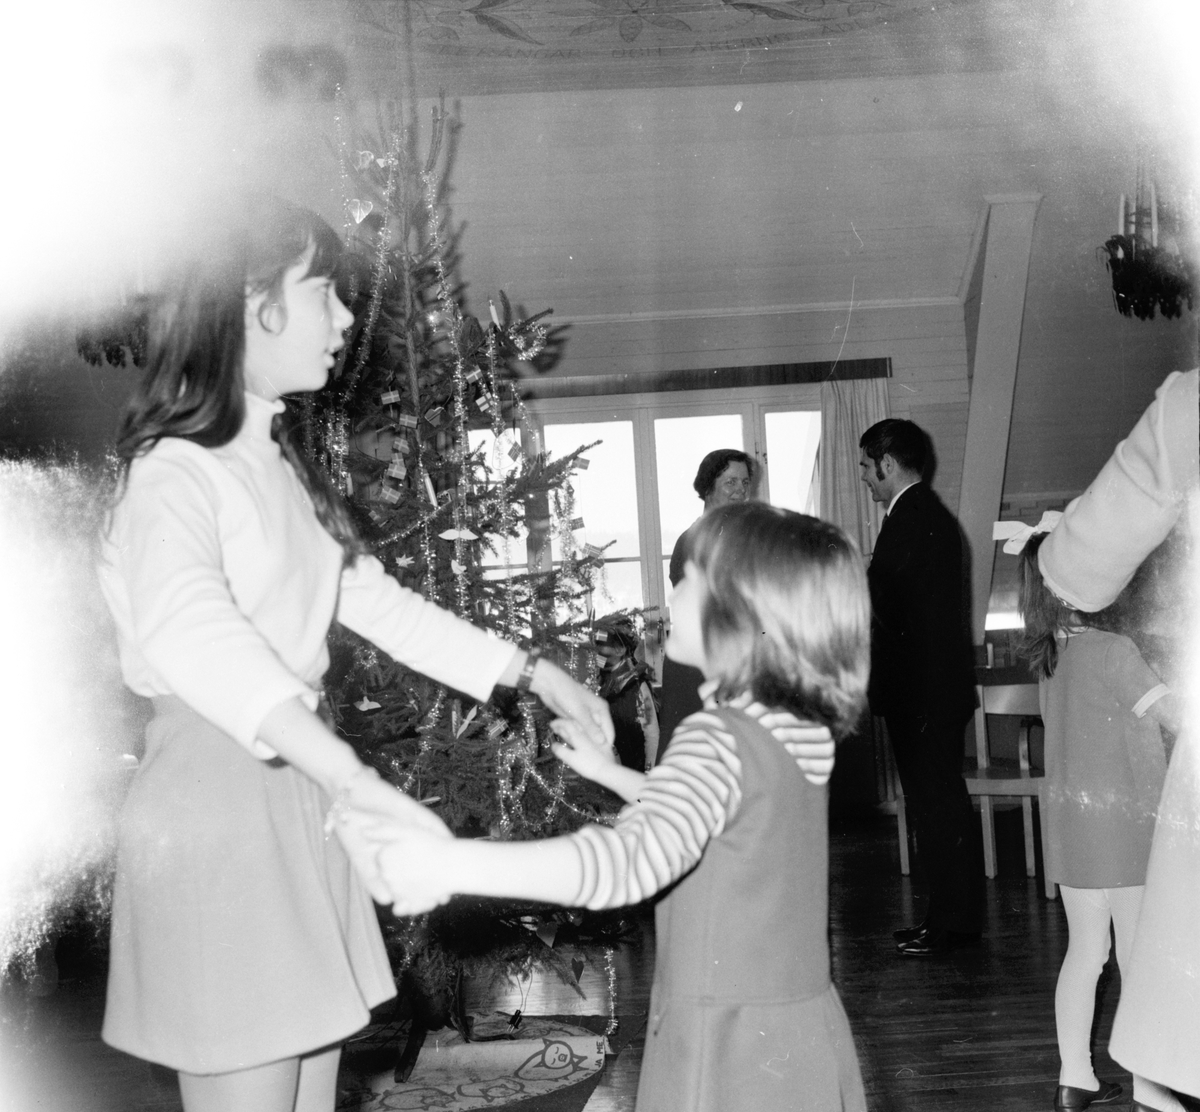 Undersvik,
Söndagsskolans julfest,
Jan 1970